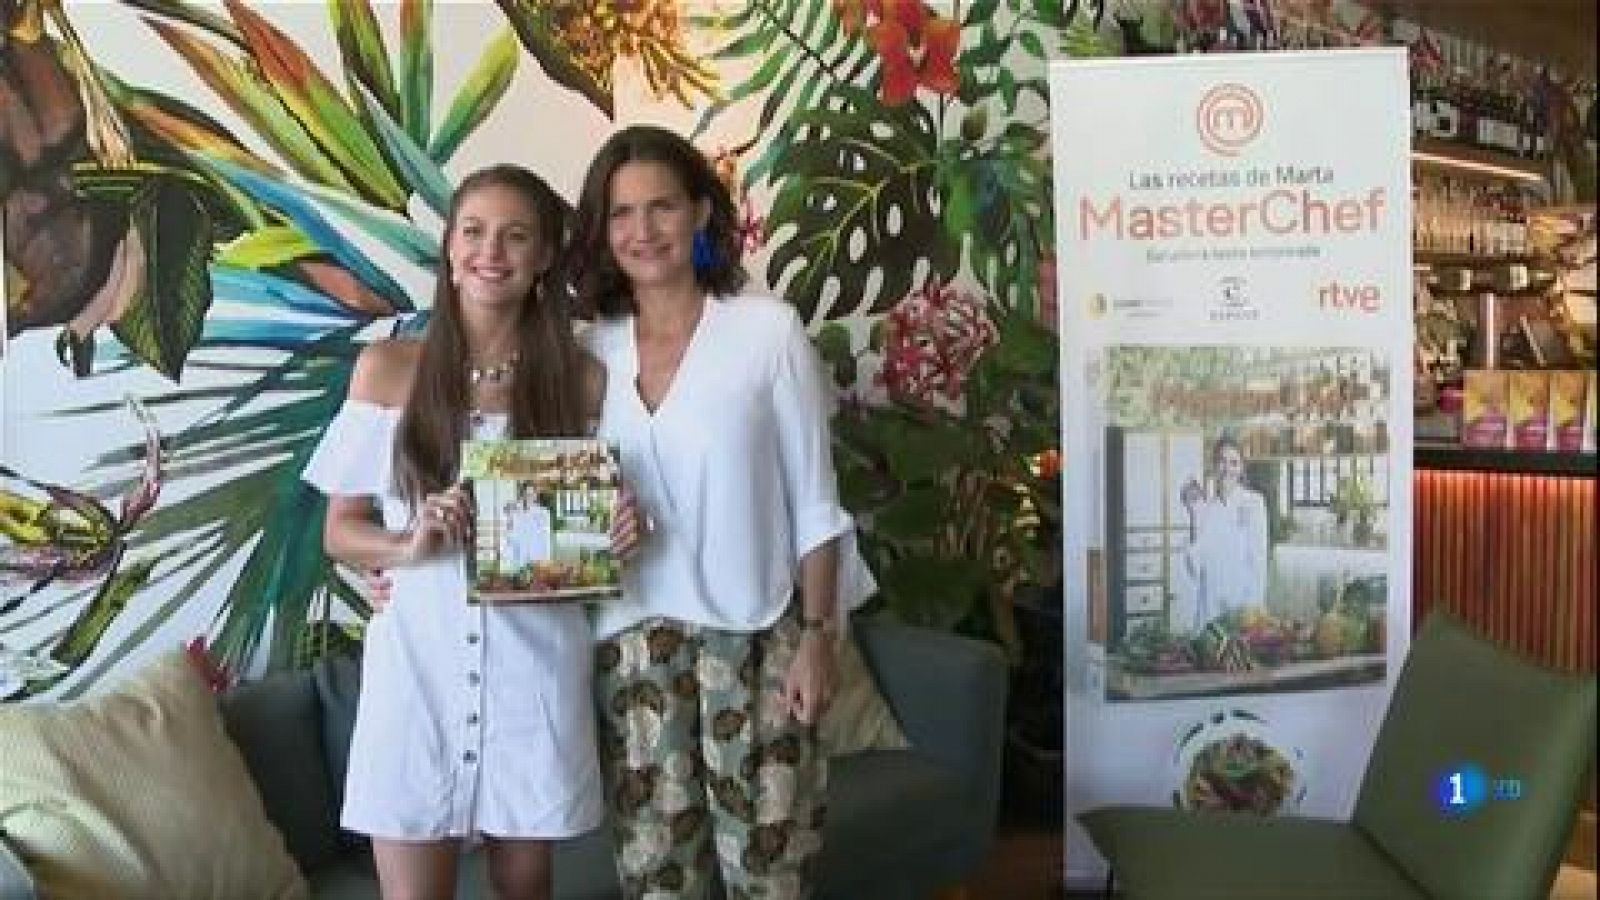 Corazón - Marta, ganadora de MasterChef 6, presenta su libro, 'Las recetas de Marta'